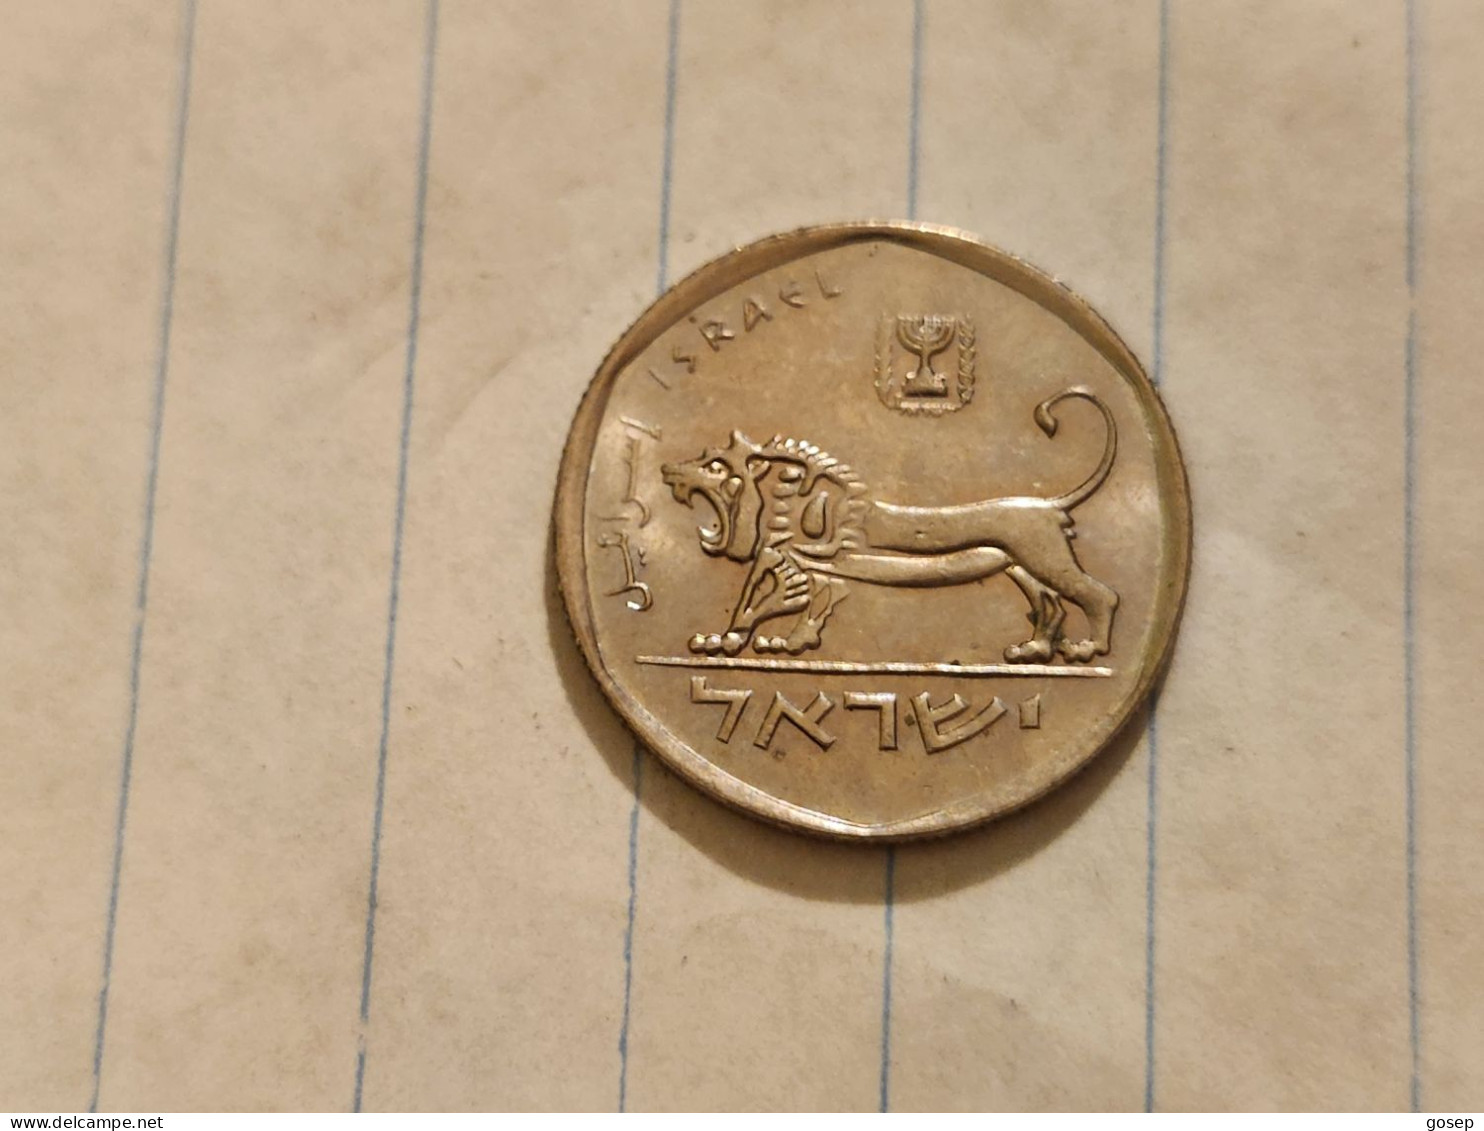 Israel-Coins-SHEKEL(1985-1981)-1/2 SHEKEL-Hapanka 32-(1981)-(24)-תשמ"א-NIKEL-good - Israele